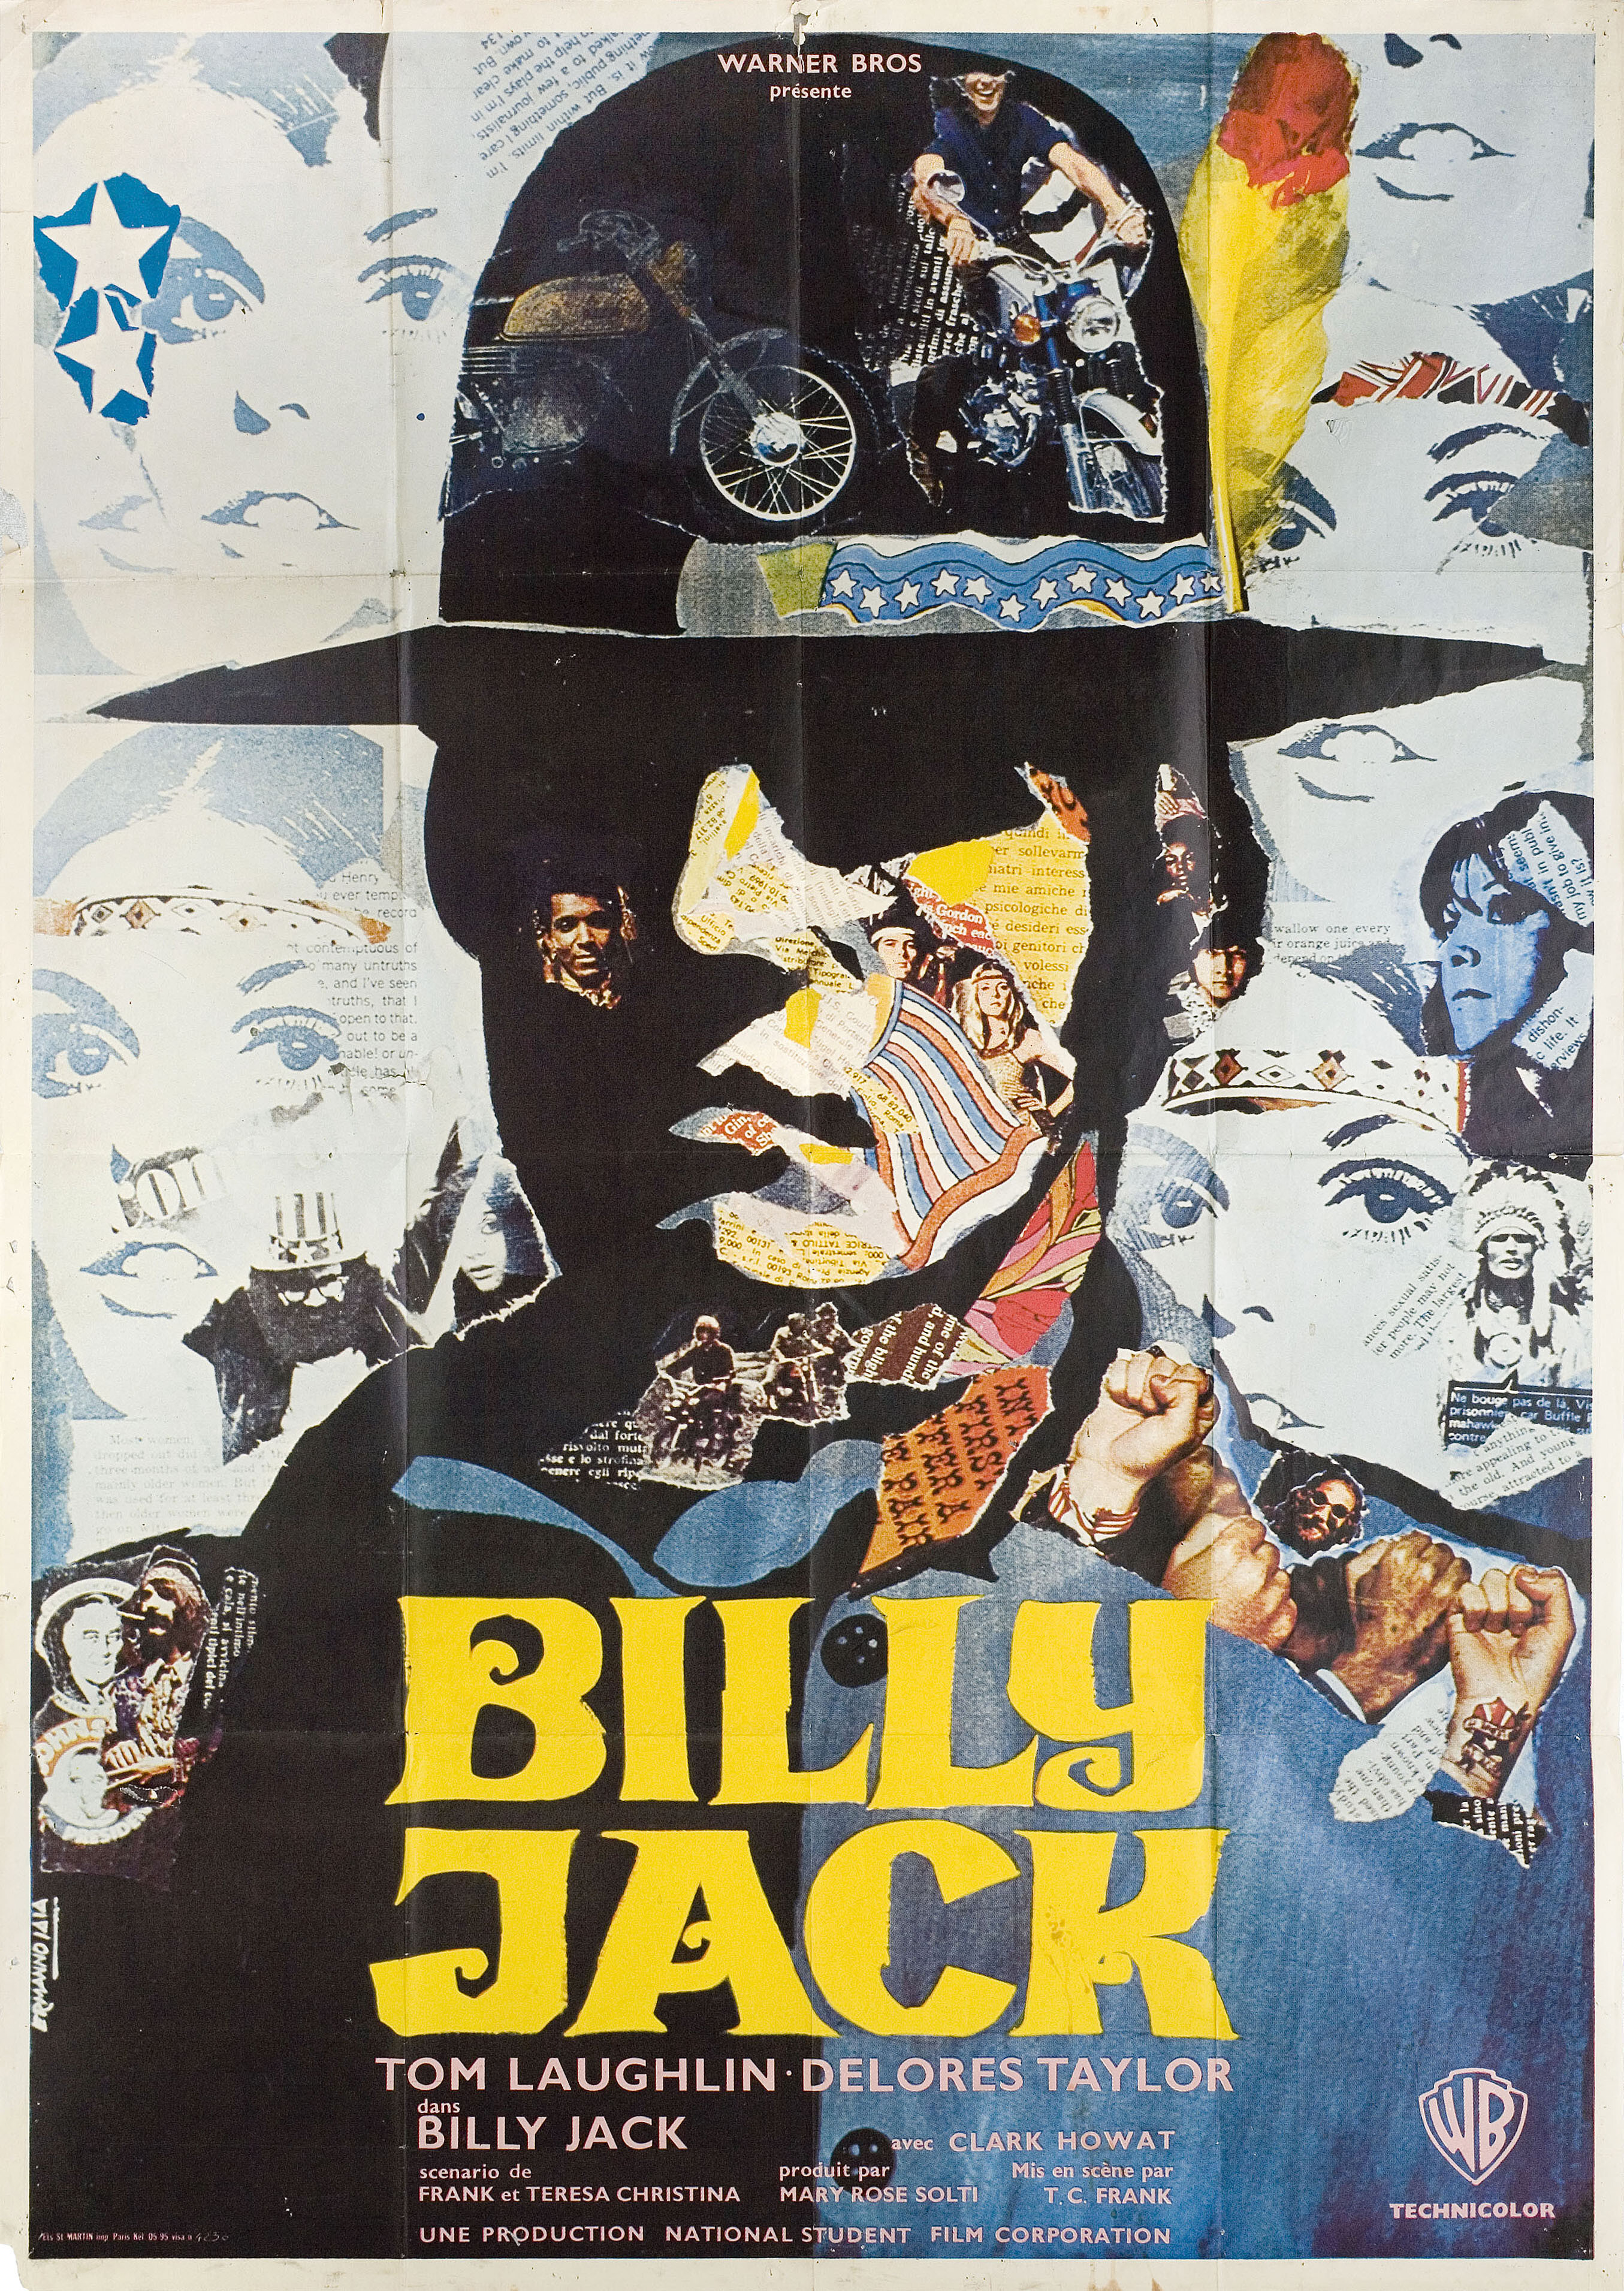 Билли Джек (Billy Jack, 1971), режиссёр Том Лафлин, французский постер к фильму, художник Пьеро Эрманно Иайя (психоделическое искусство, 1971 год)